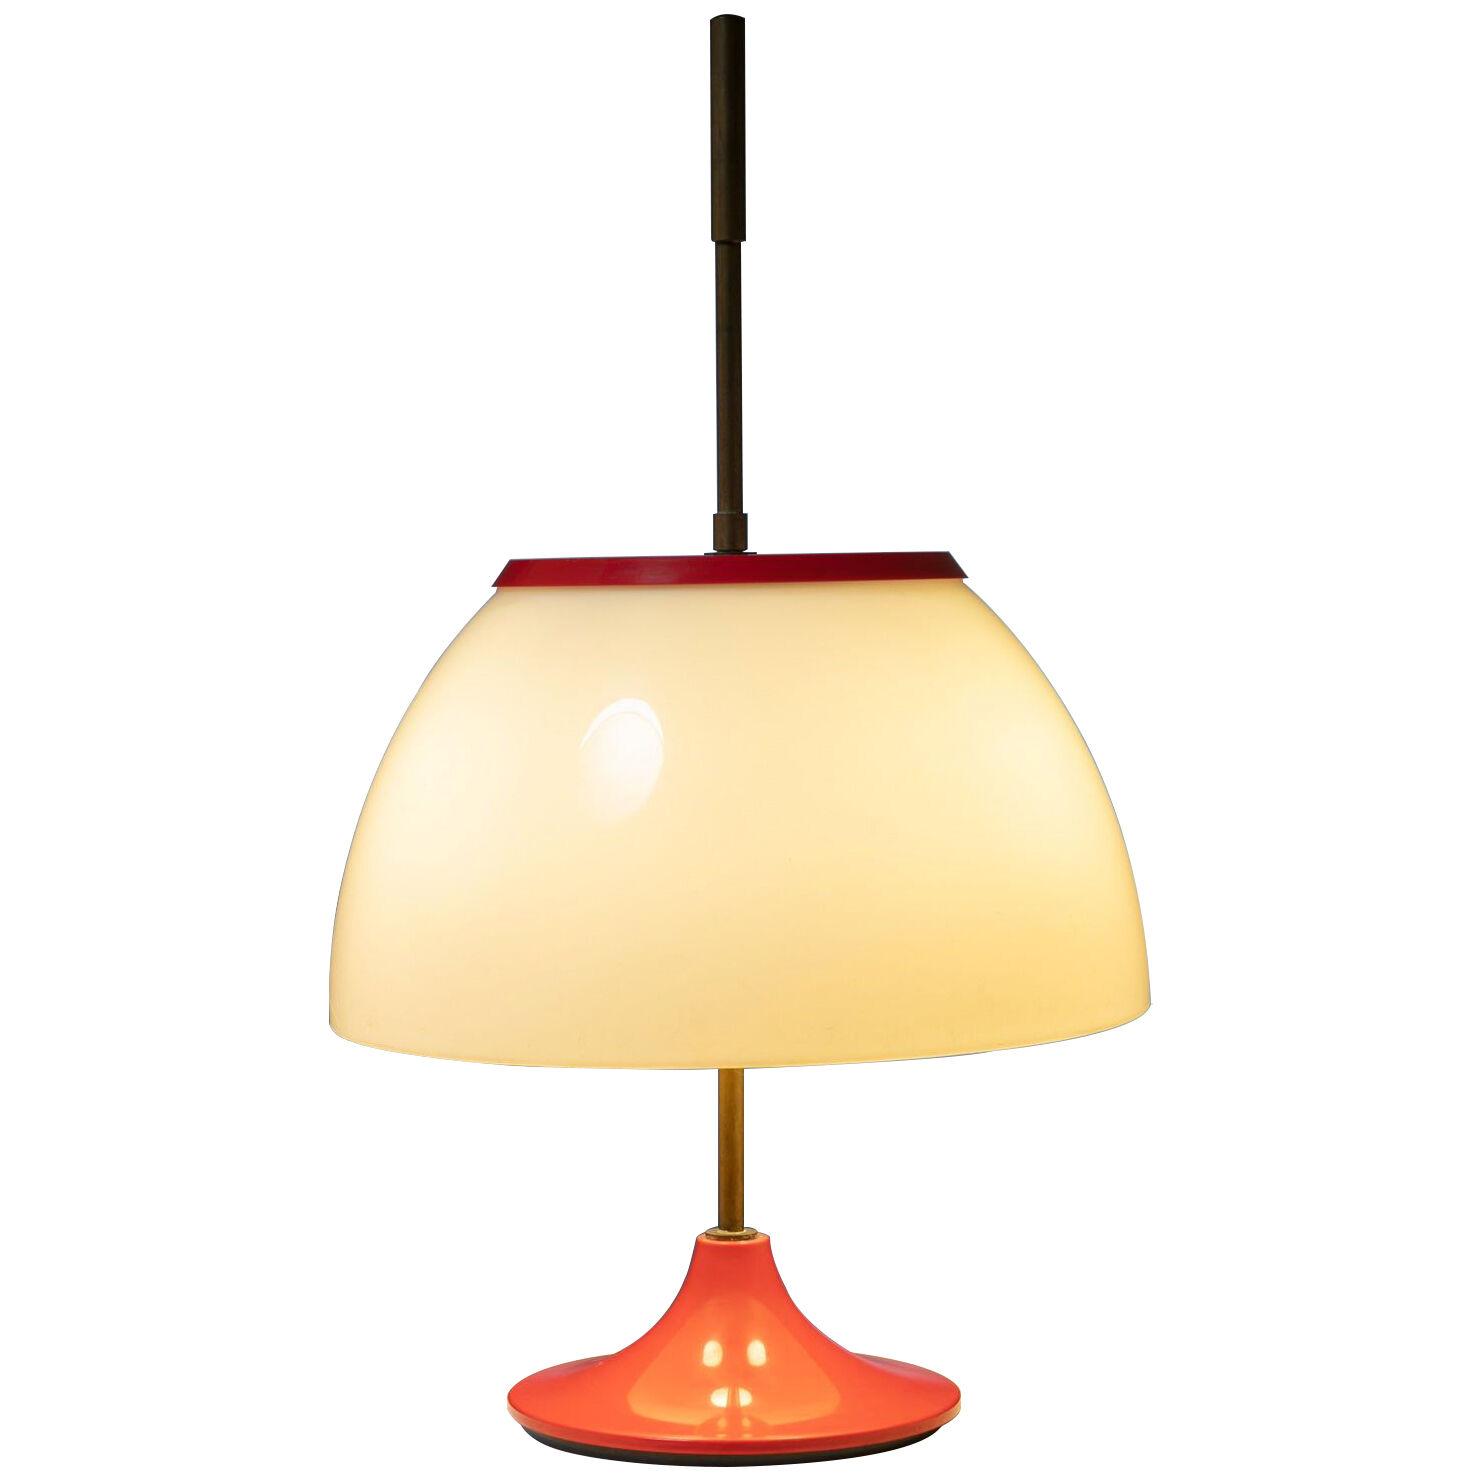 Italian 60s Table Lamp